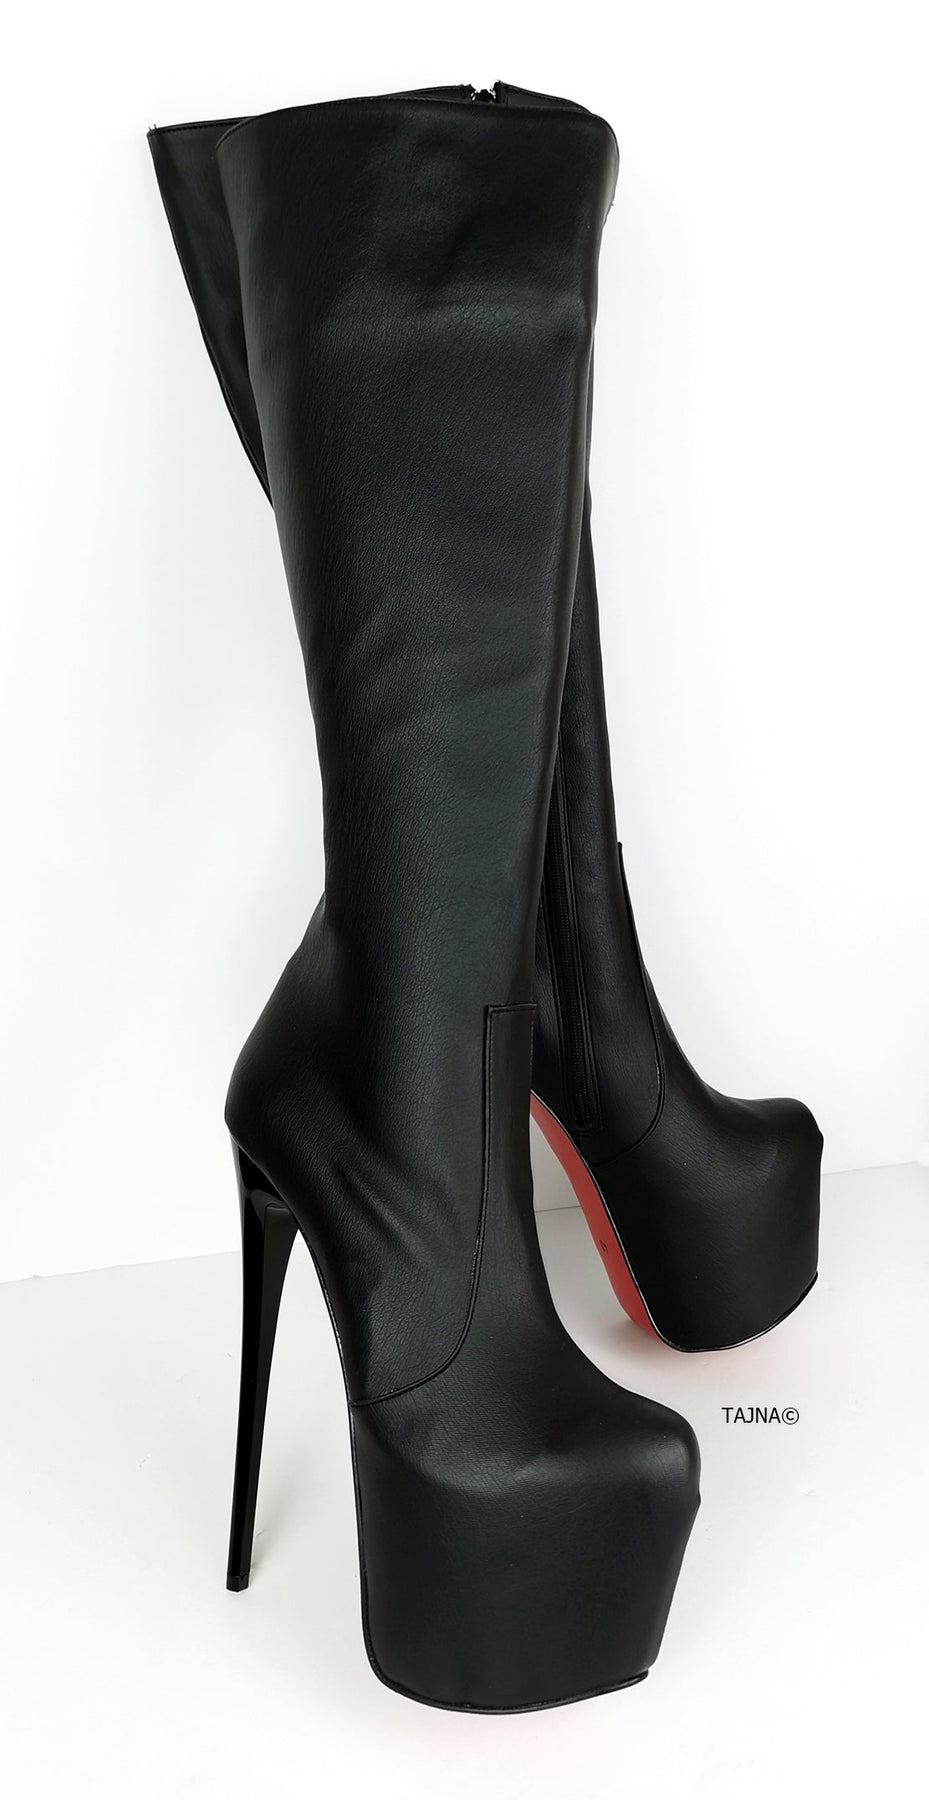 Mid-Calf High Heel Black Boots | Tajna Shoes